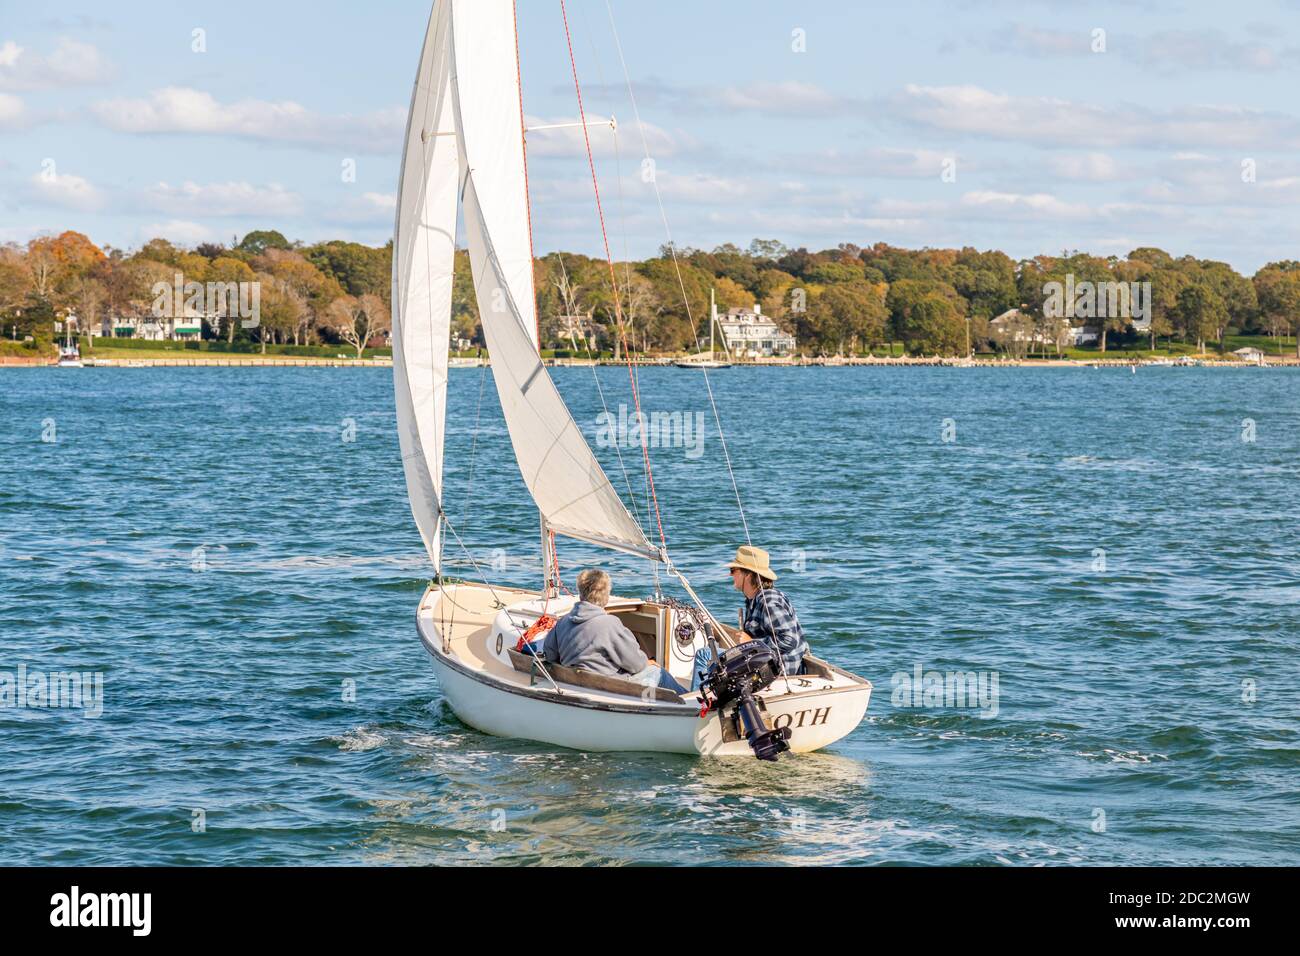 A couple sailing a small sail boat near Dering Harbor, NY Stock Photo